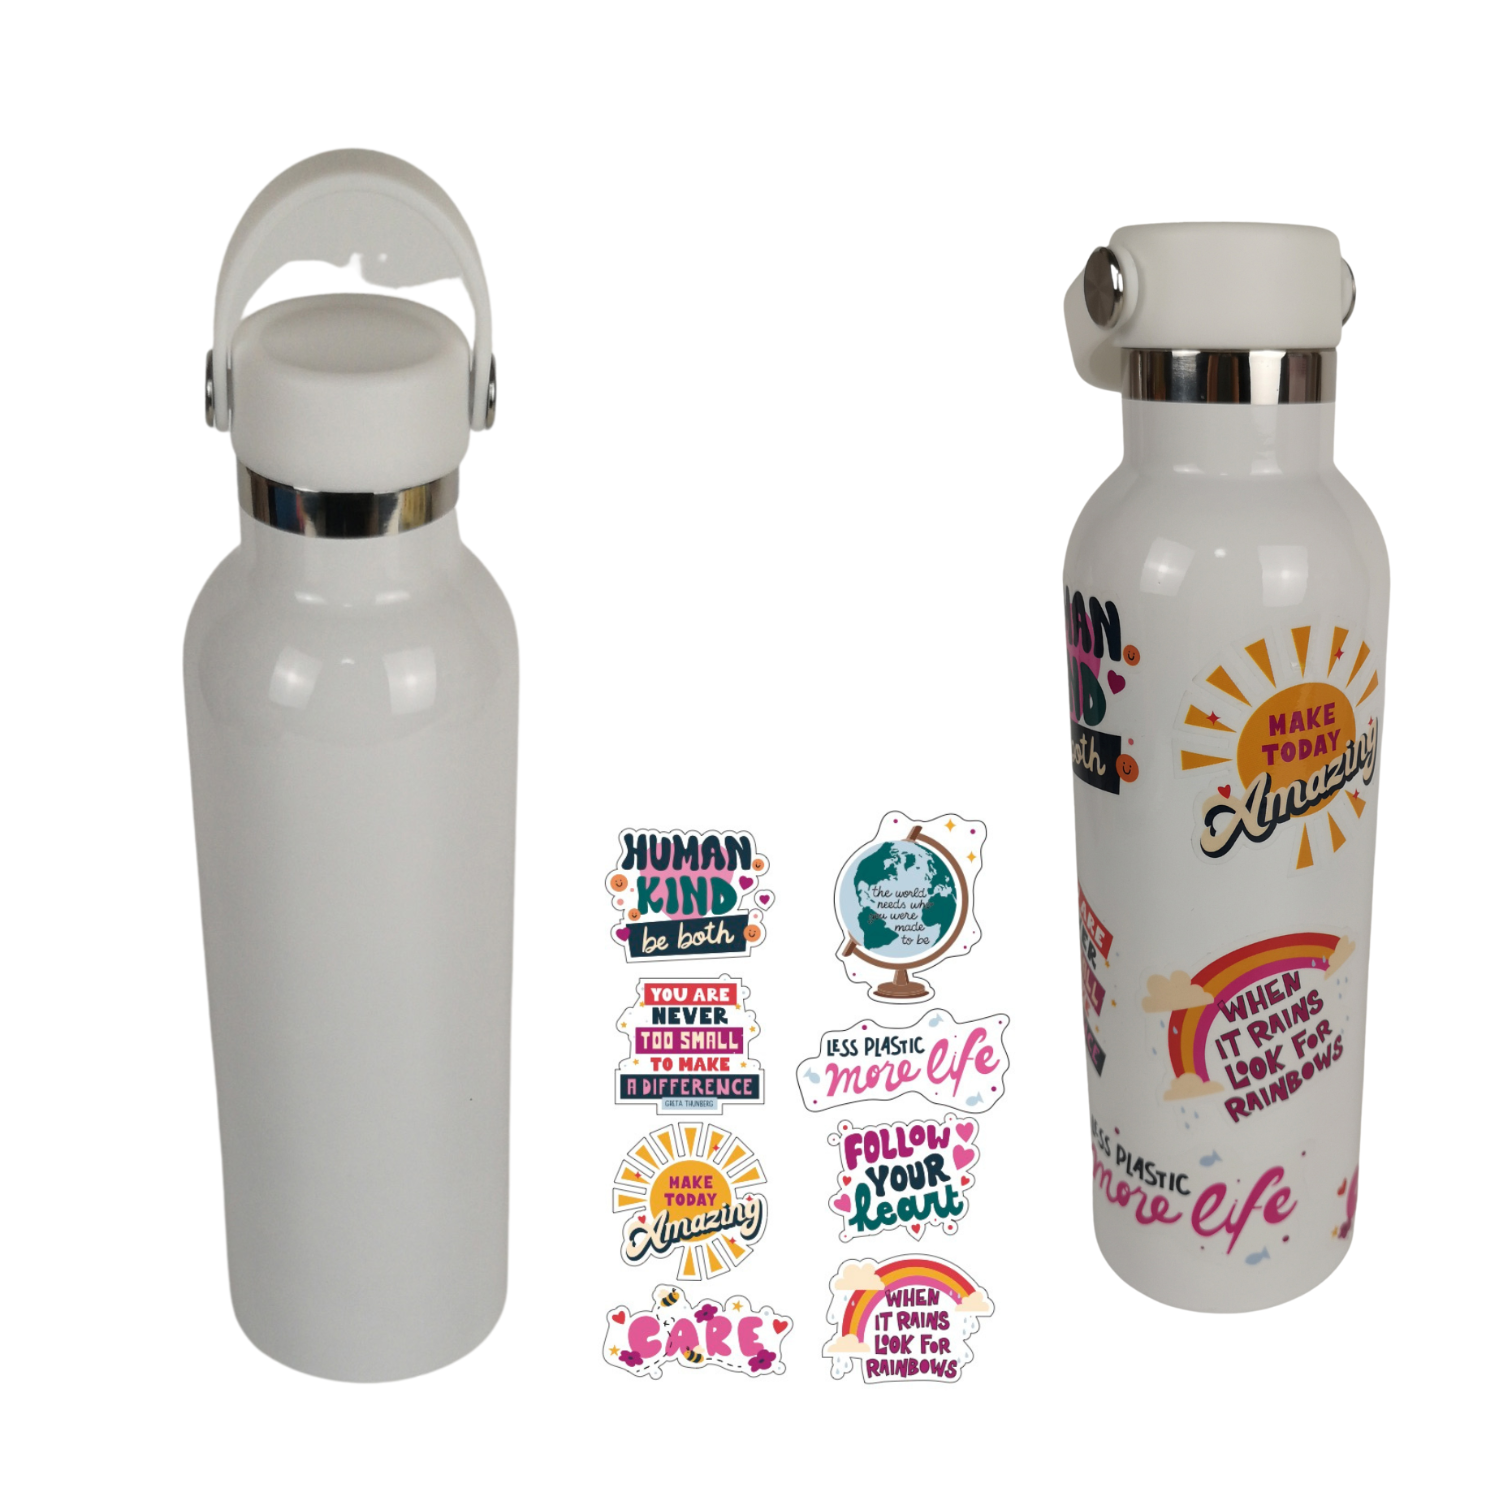 Care like Greta Eco-Friendly Stainless Steel Water Bottle & Sticker Kit